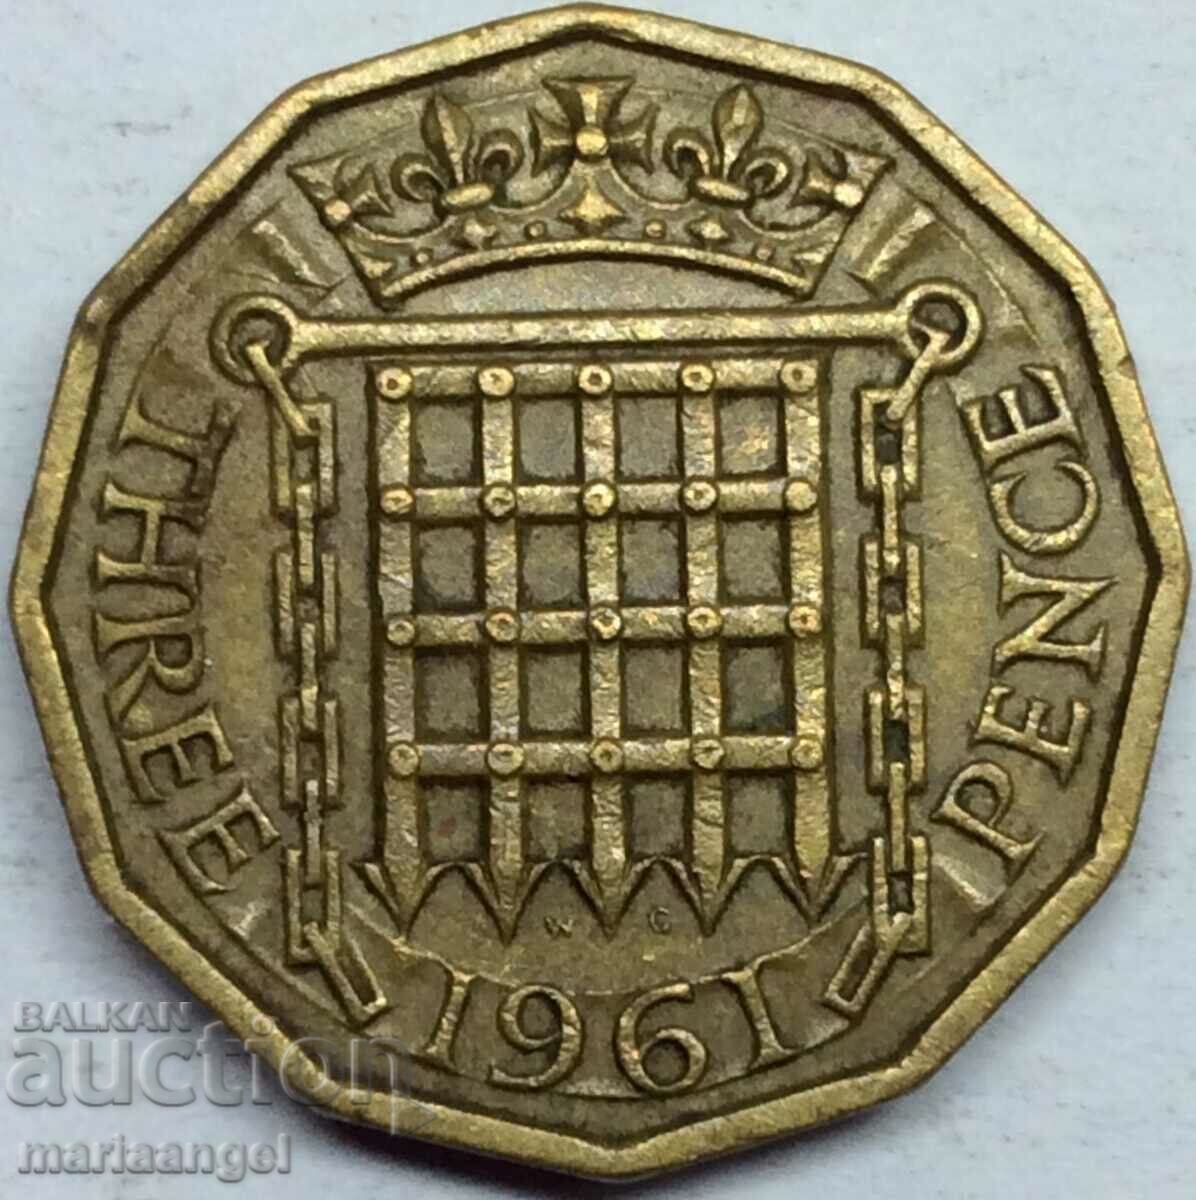 Great Britain 3 pence 1961 Elizabeth II brass